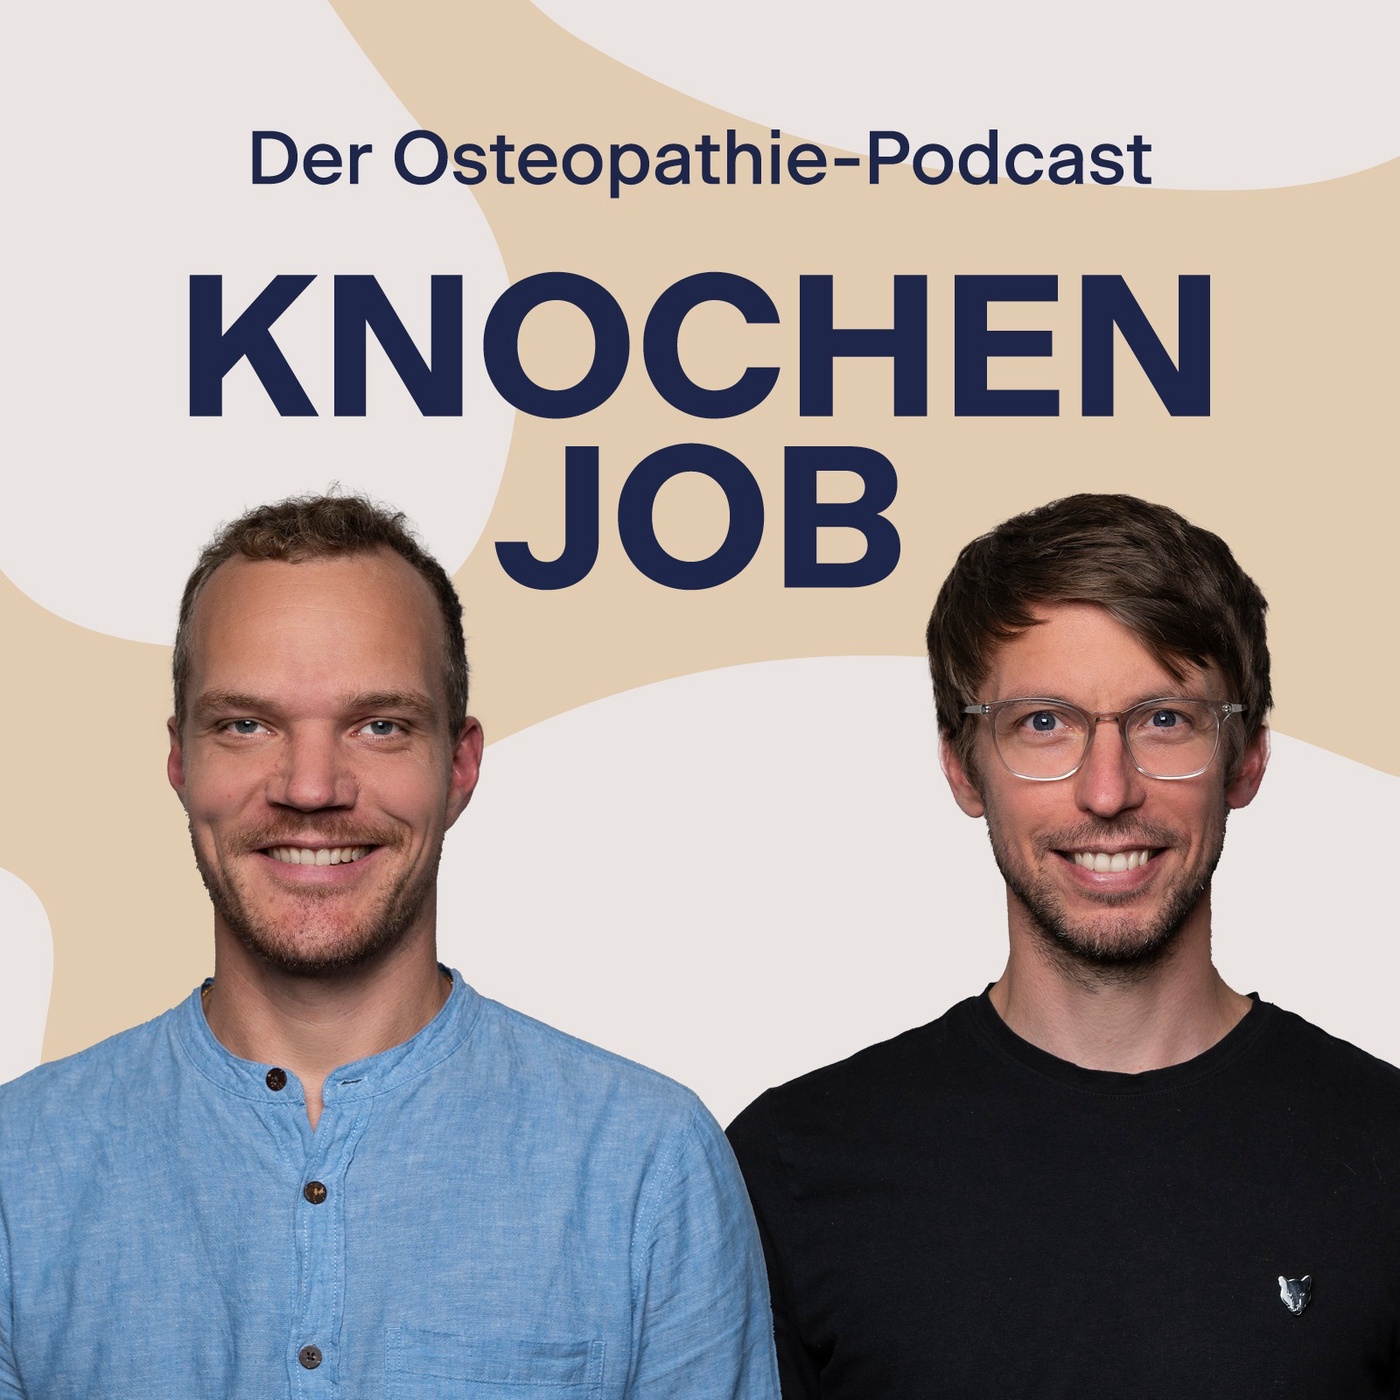 Interview-Spezial mit Guido F. Meert: Osteopathischer Wissensdurst wächst exponentiell